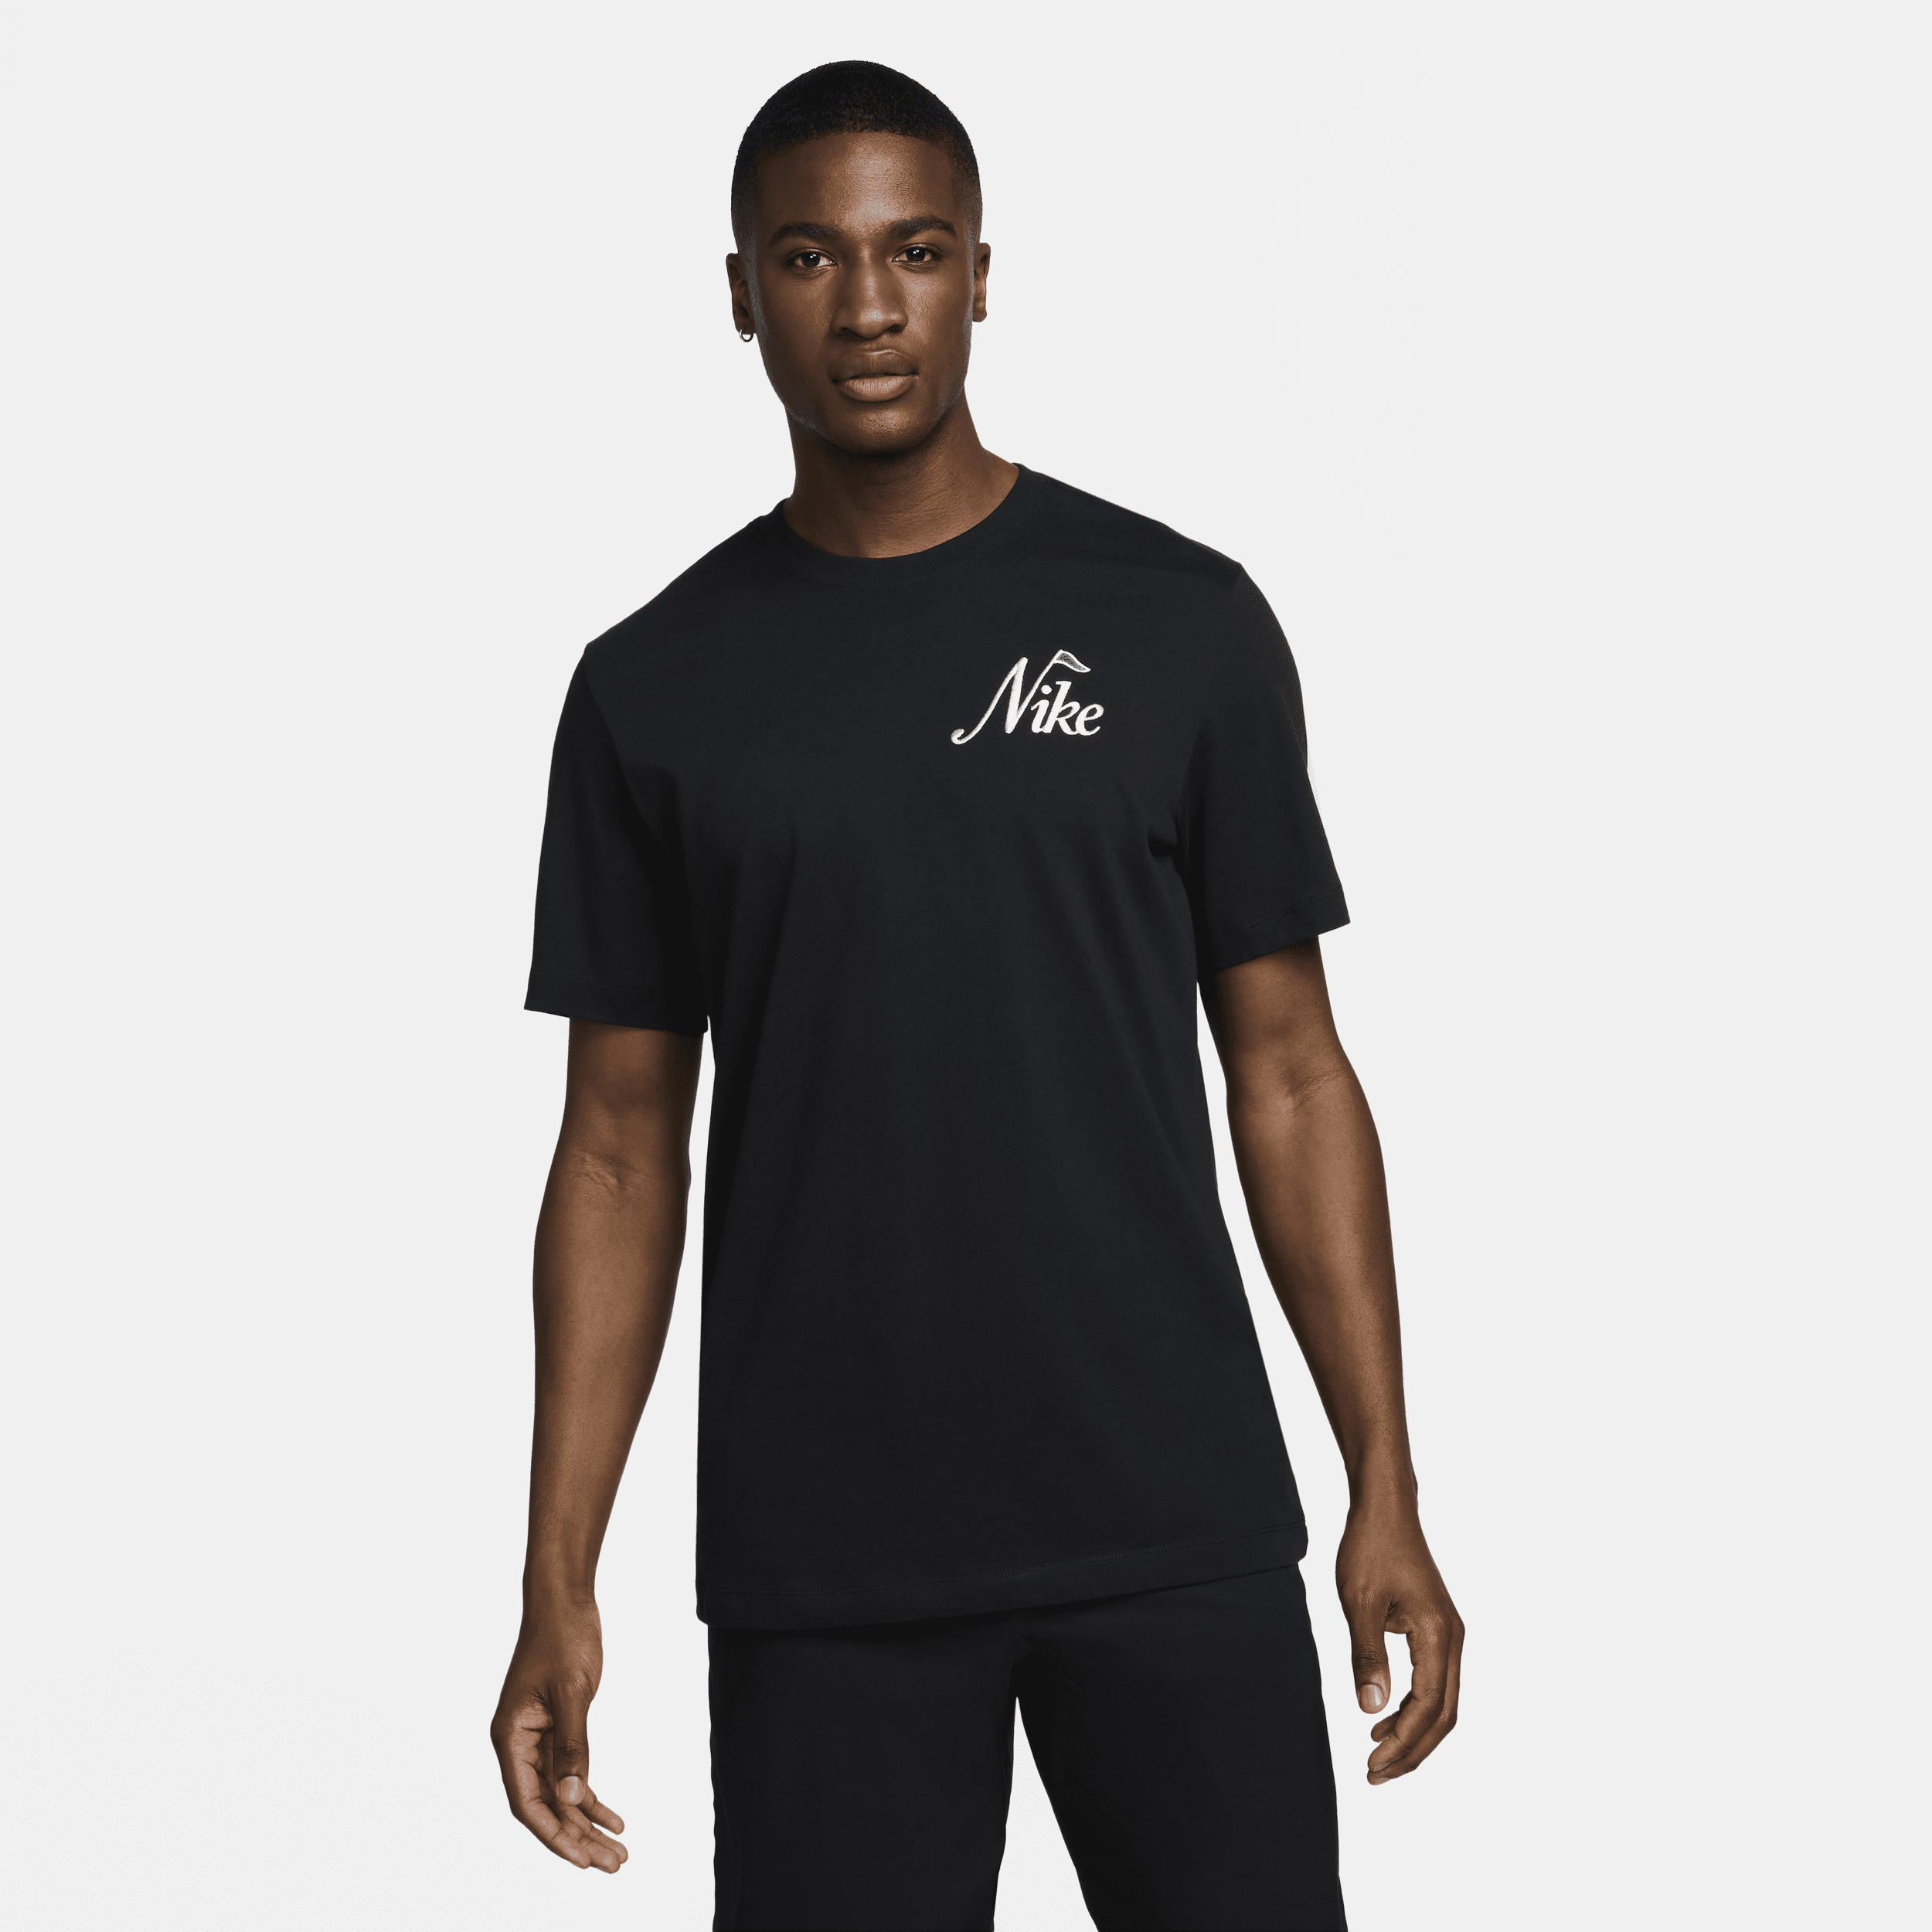 Nike See Ya T-Shirt, Black